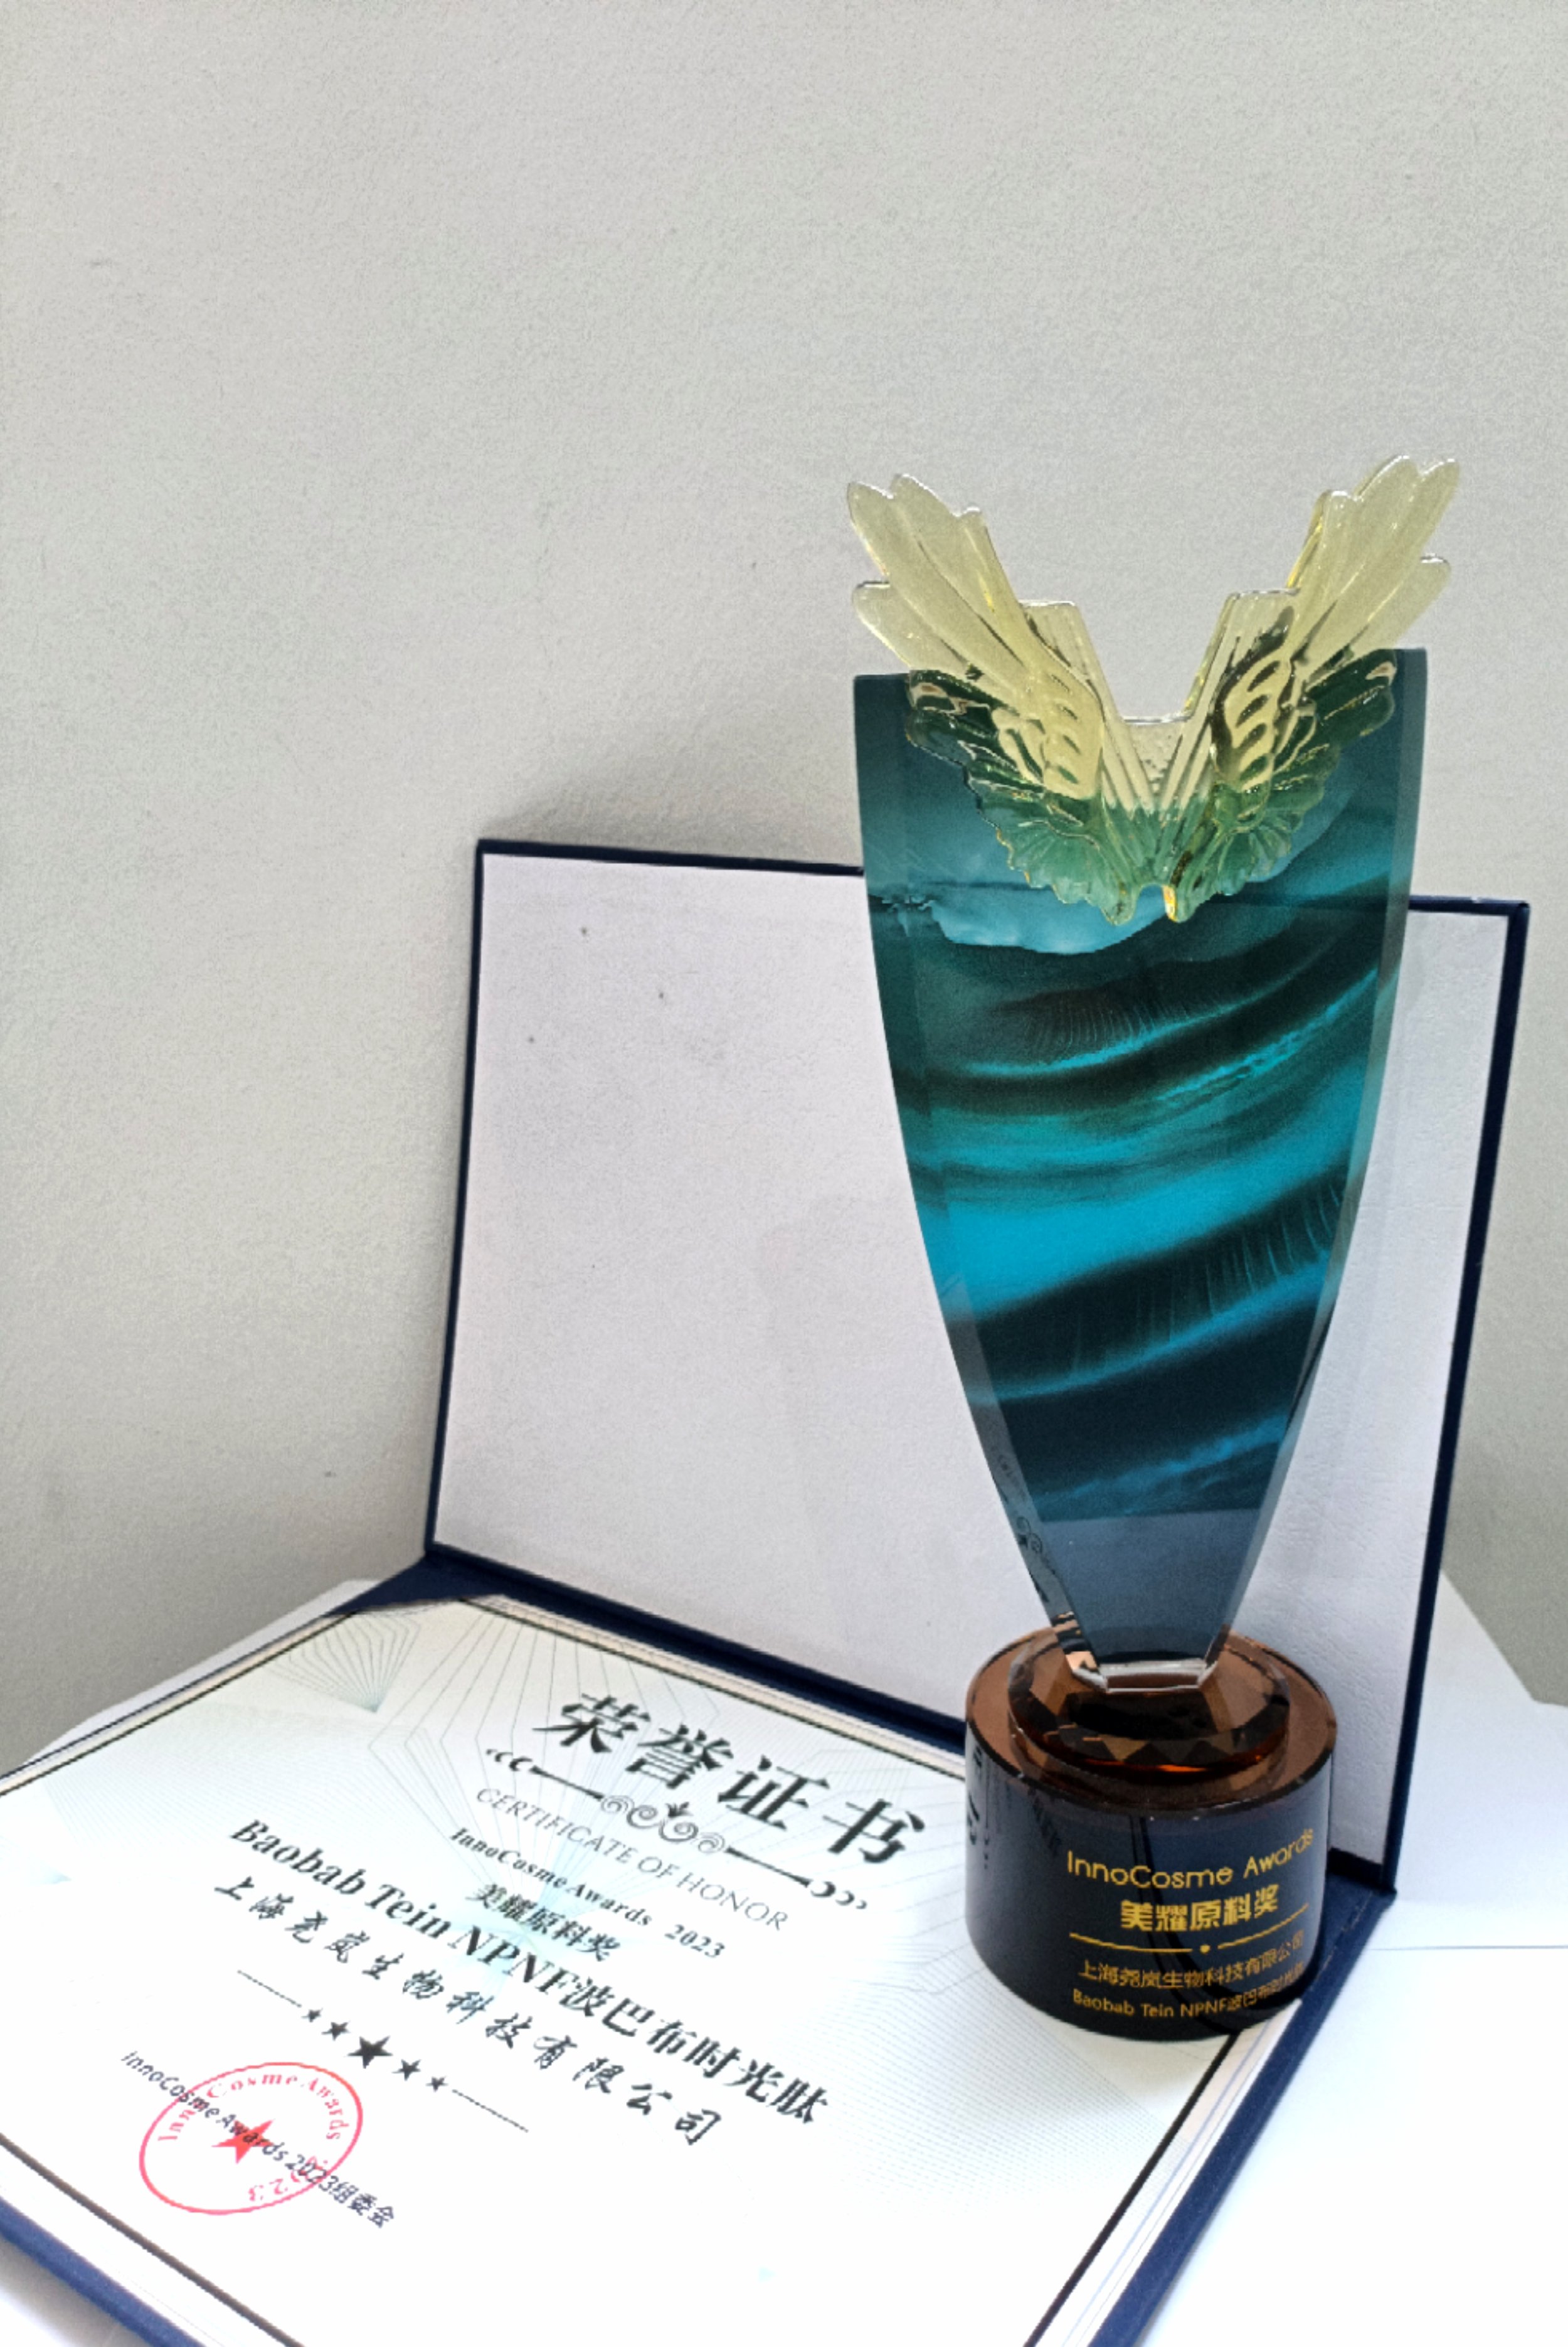 O Baobab Tein NPNF® foi premiado com o prestigioso título de "Ingrediente mais criativo" no InnoCosme Awards 2023!